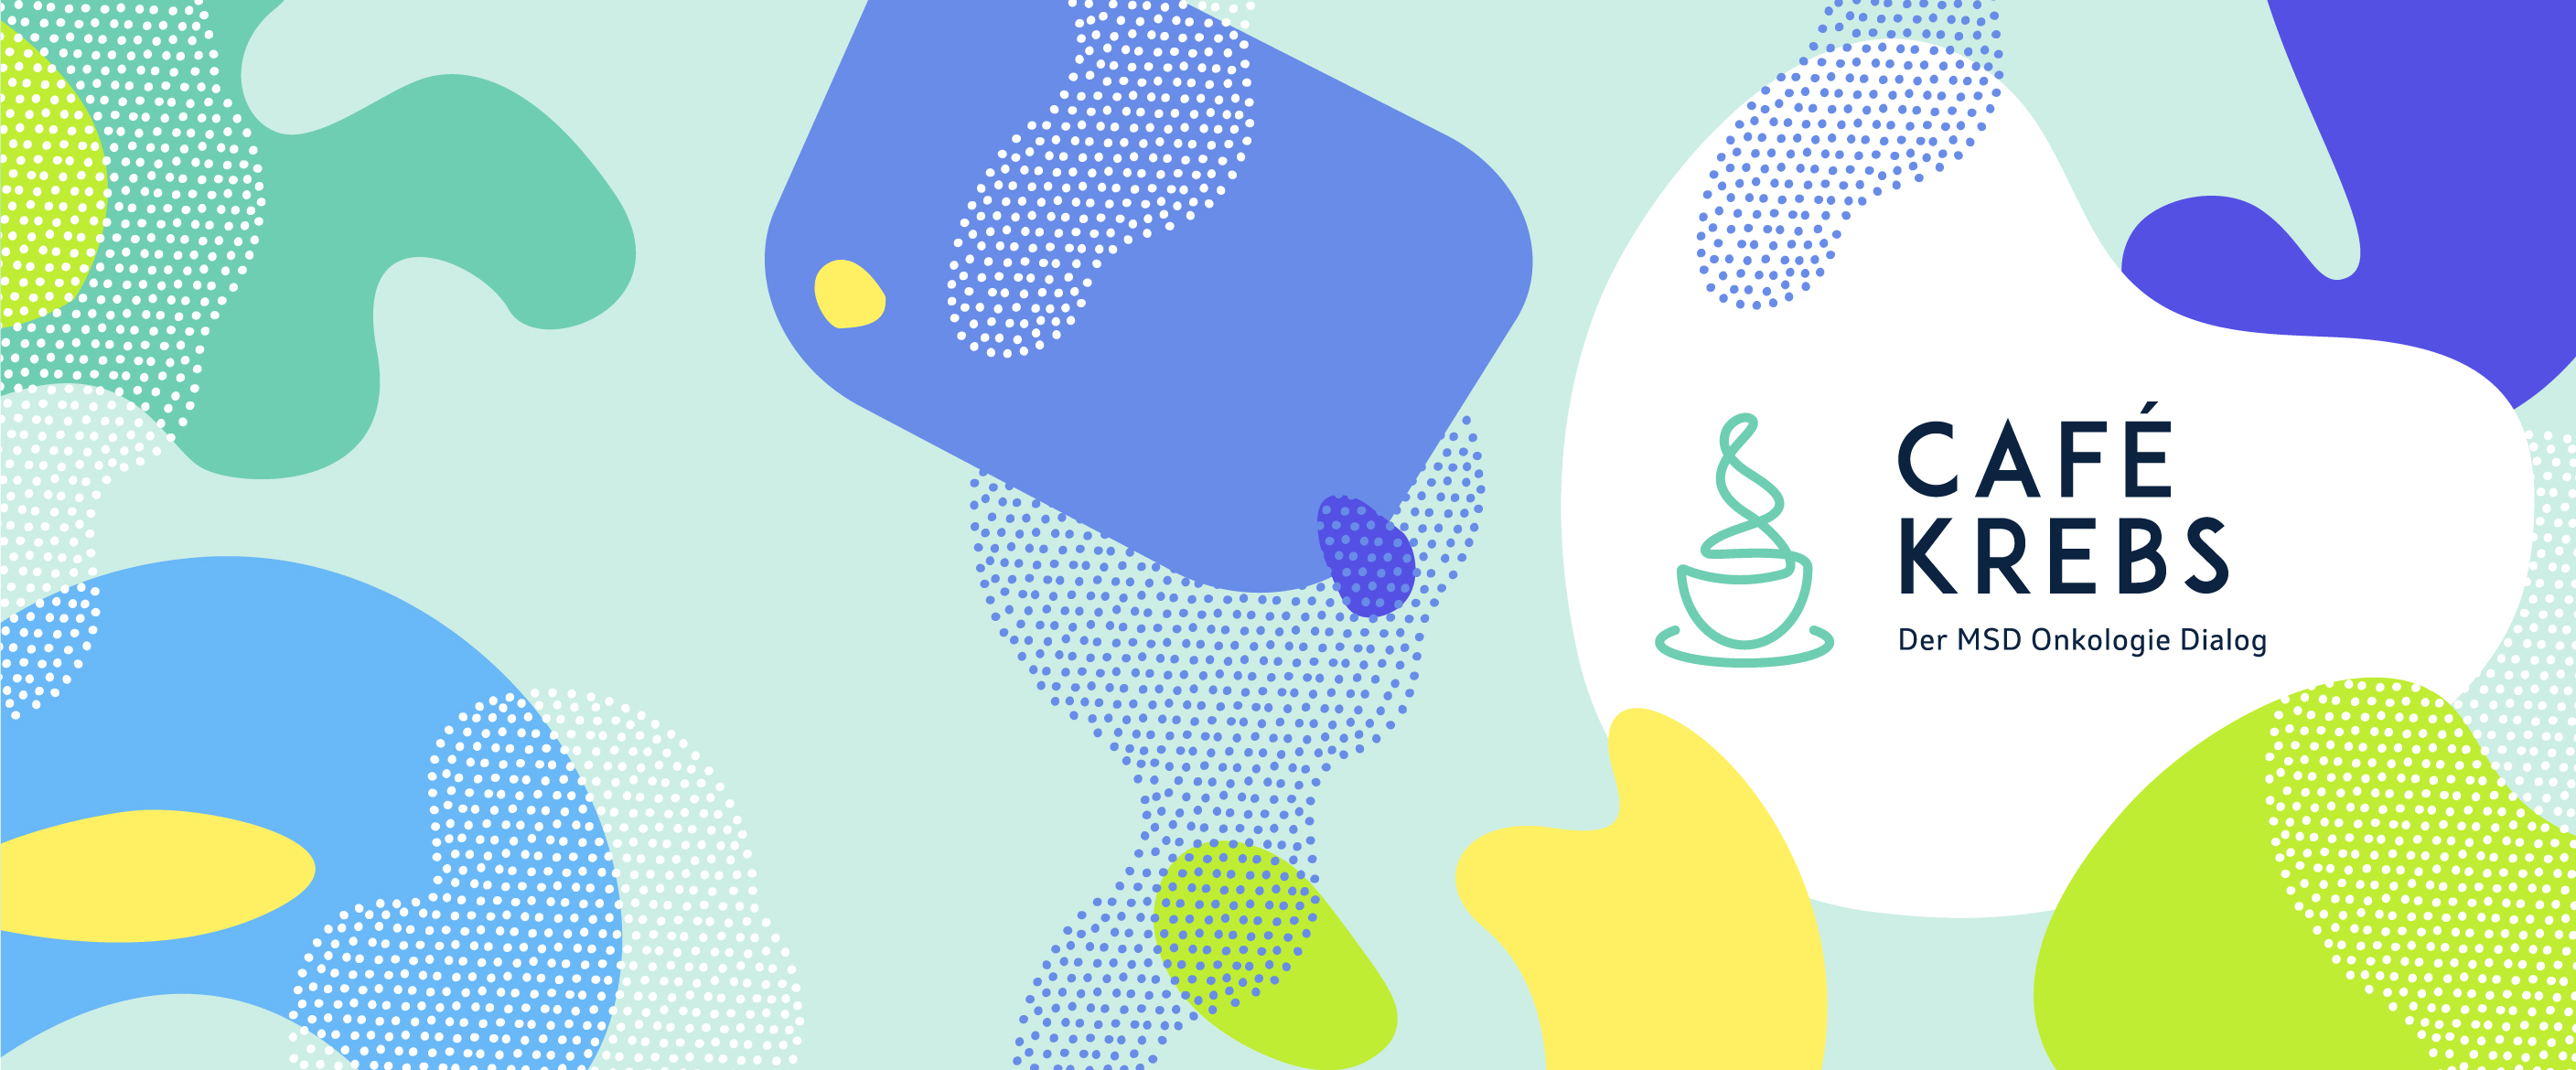 Titelbild von Café krebs mit bunten Kreisornamenten und illustrierter Kaffeetasse